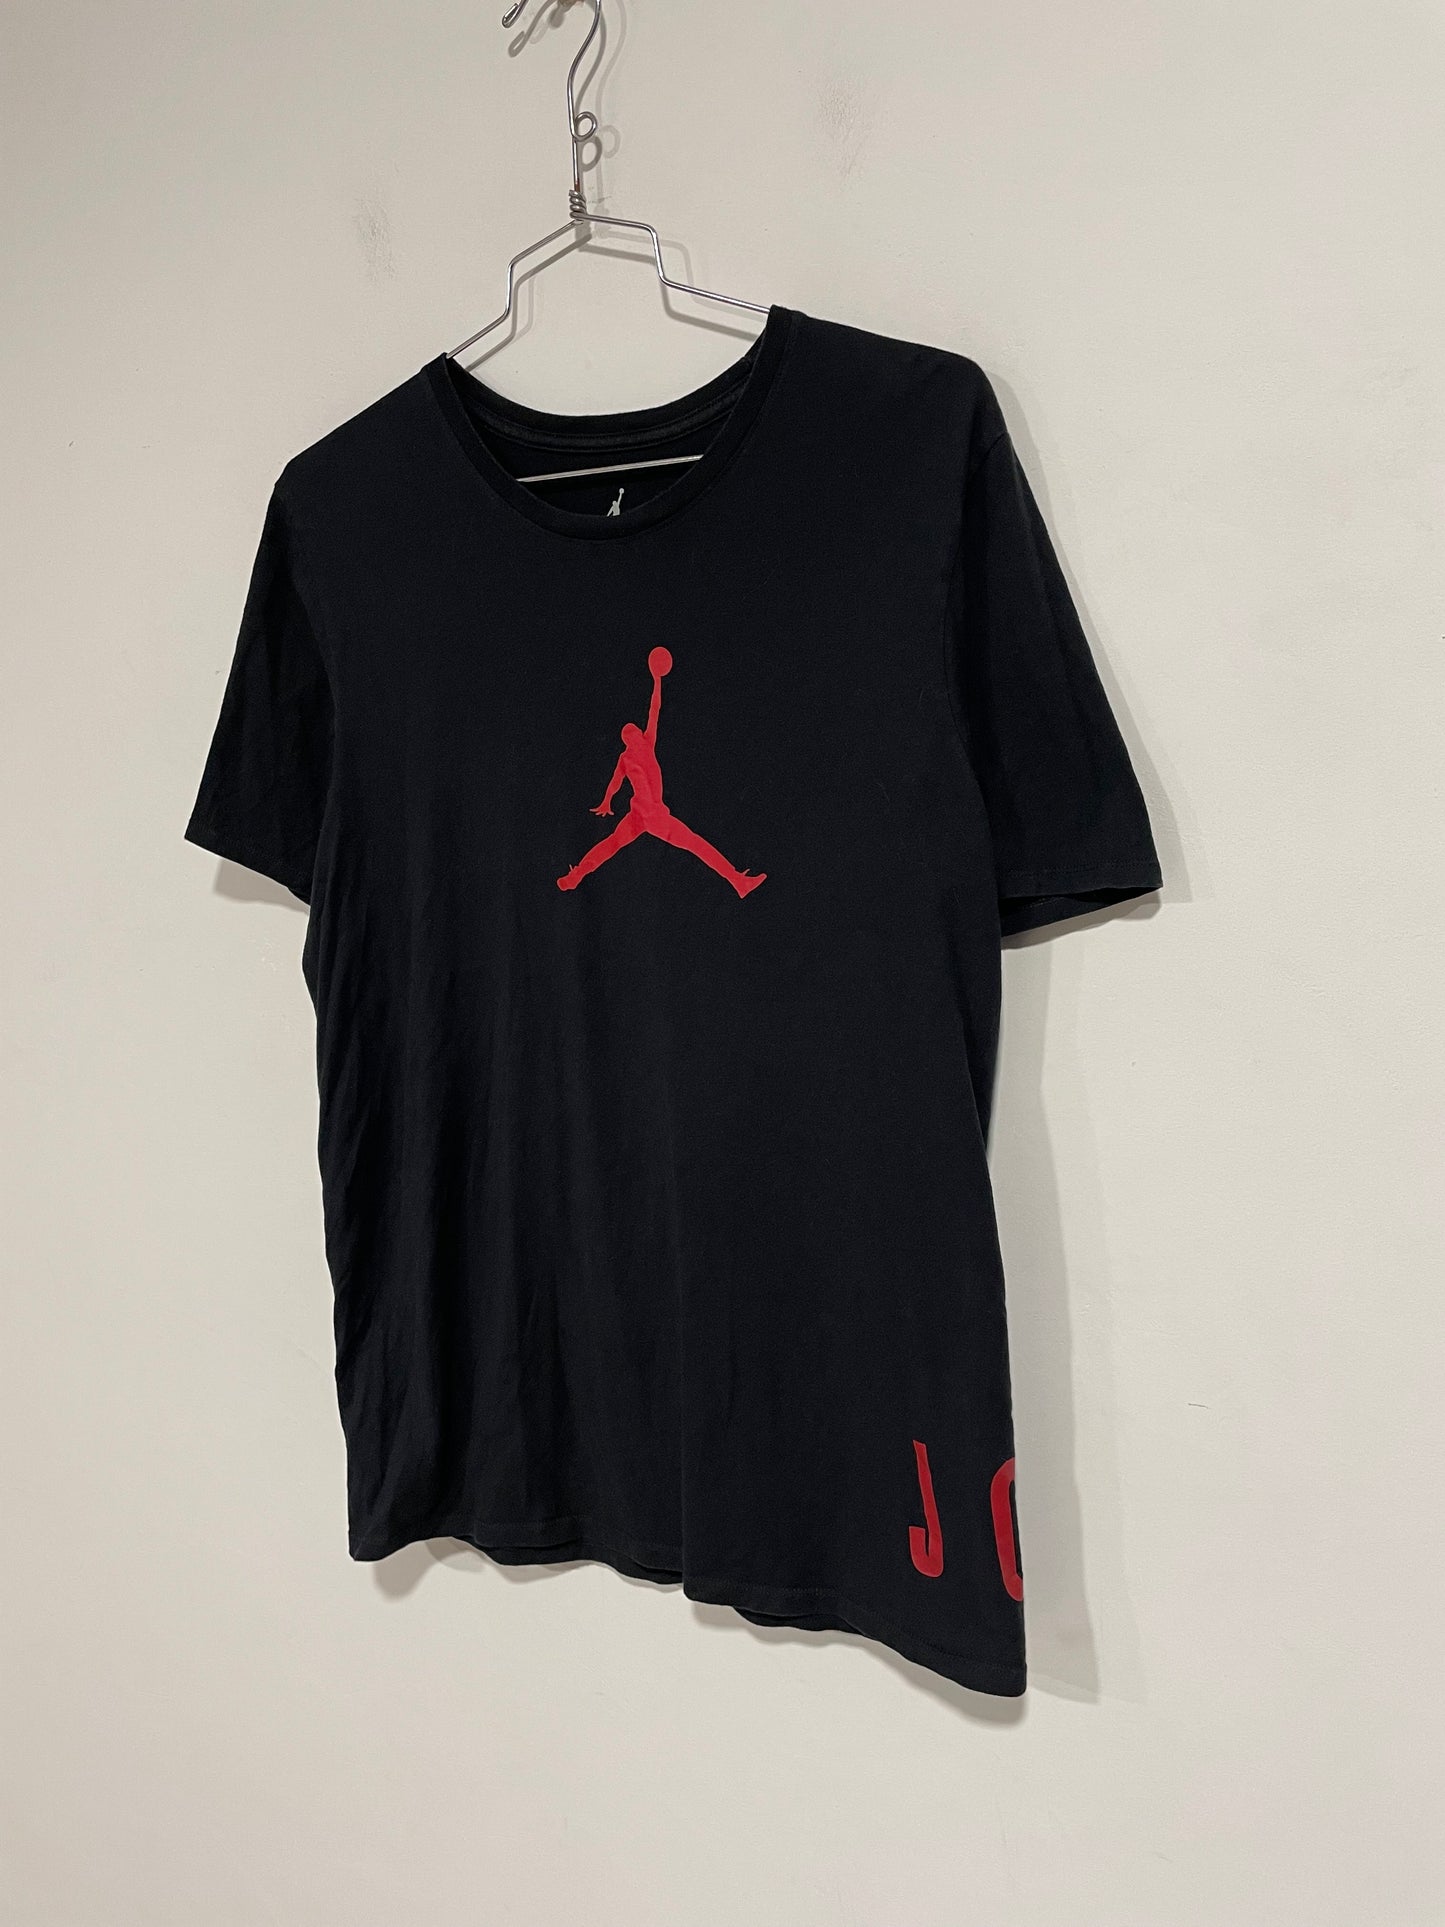 T shirt Jordan 23 (D266)